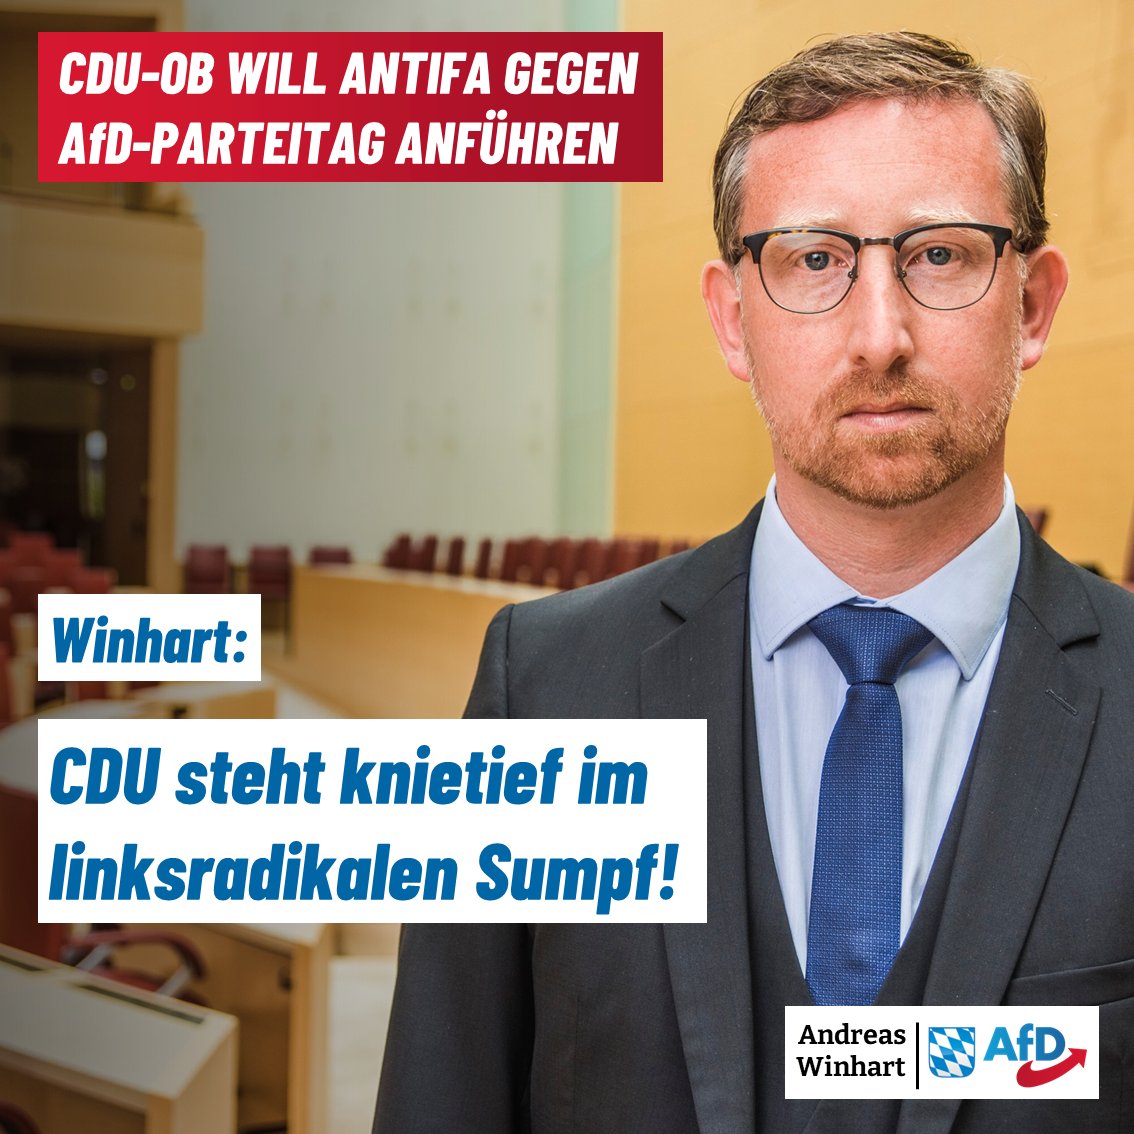 'Die #Antifa mobilisiert, und der Oberbürgermeister will beim Protest gegen den #AfD-Parteitag 'an der Spitze stehen' und kündigt an, die Sicherheit 'vielleicht nicht immer zu gewährleisten'.' (@Junge_Freiheit) Die CDU steht knietief im linksradikalen Sumpf. Darum: #nurnochAfD!